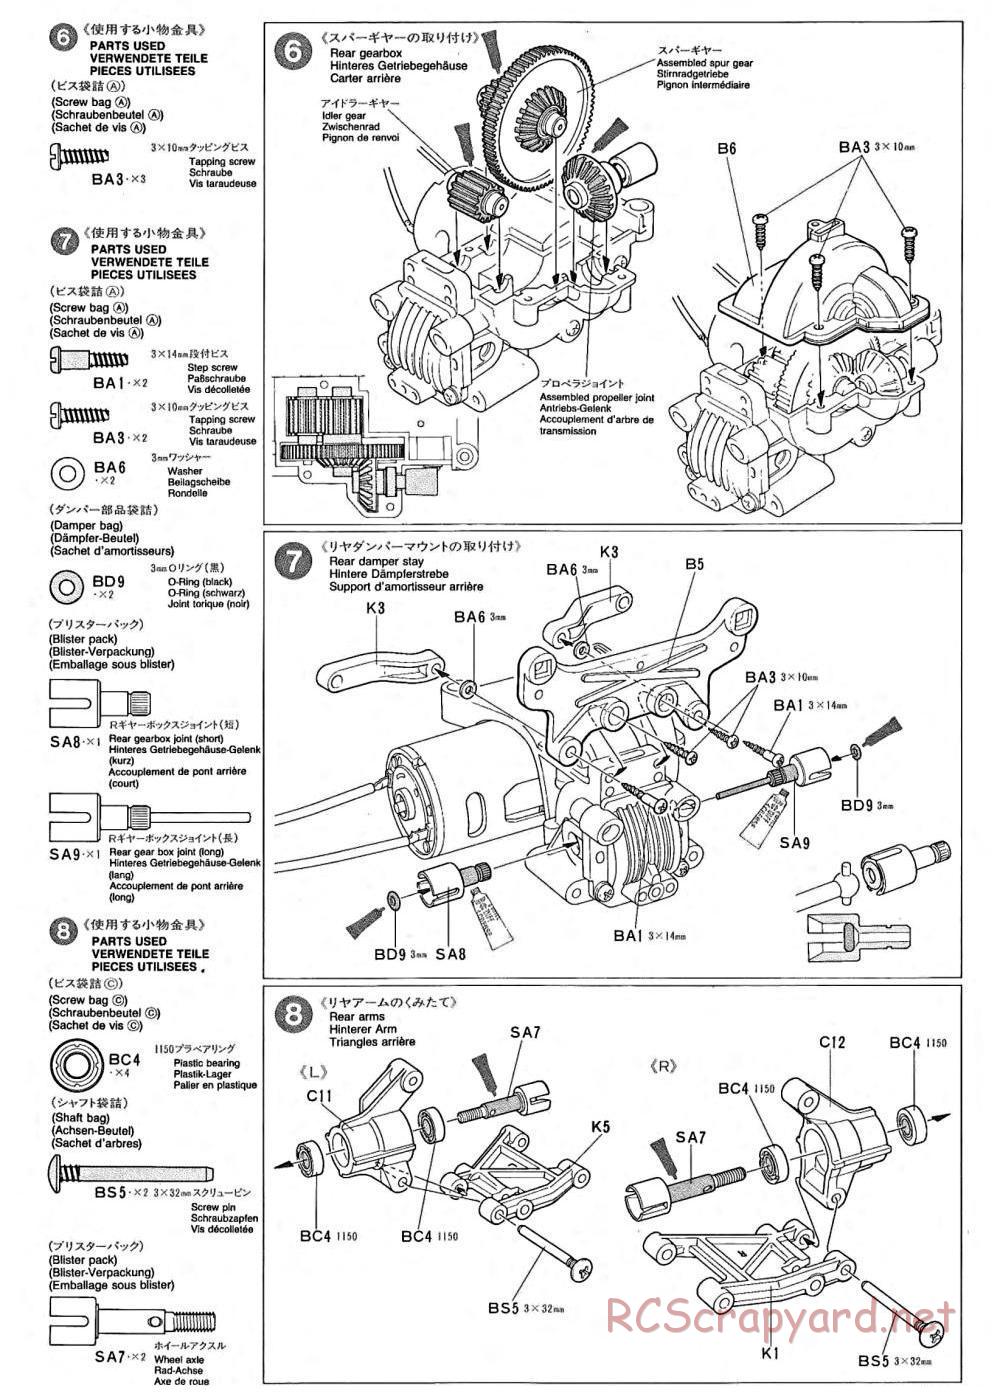 Tamiya - TA-02 Chassis - Manual - Page 3